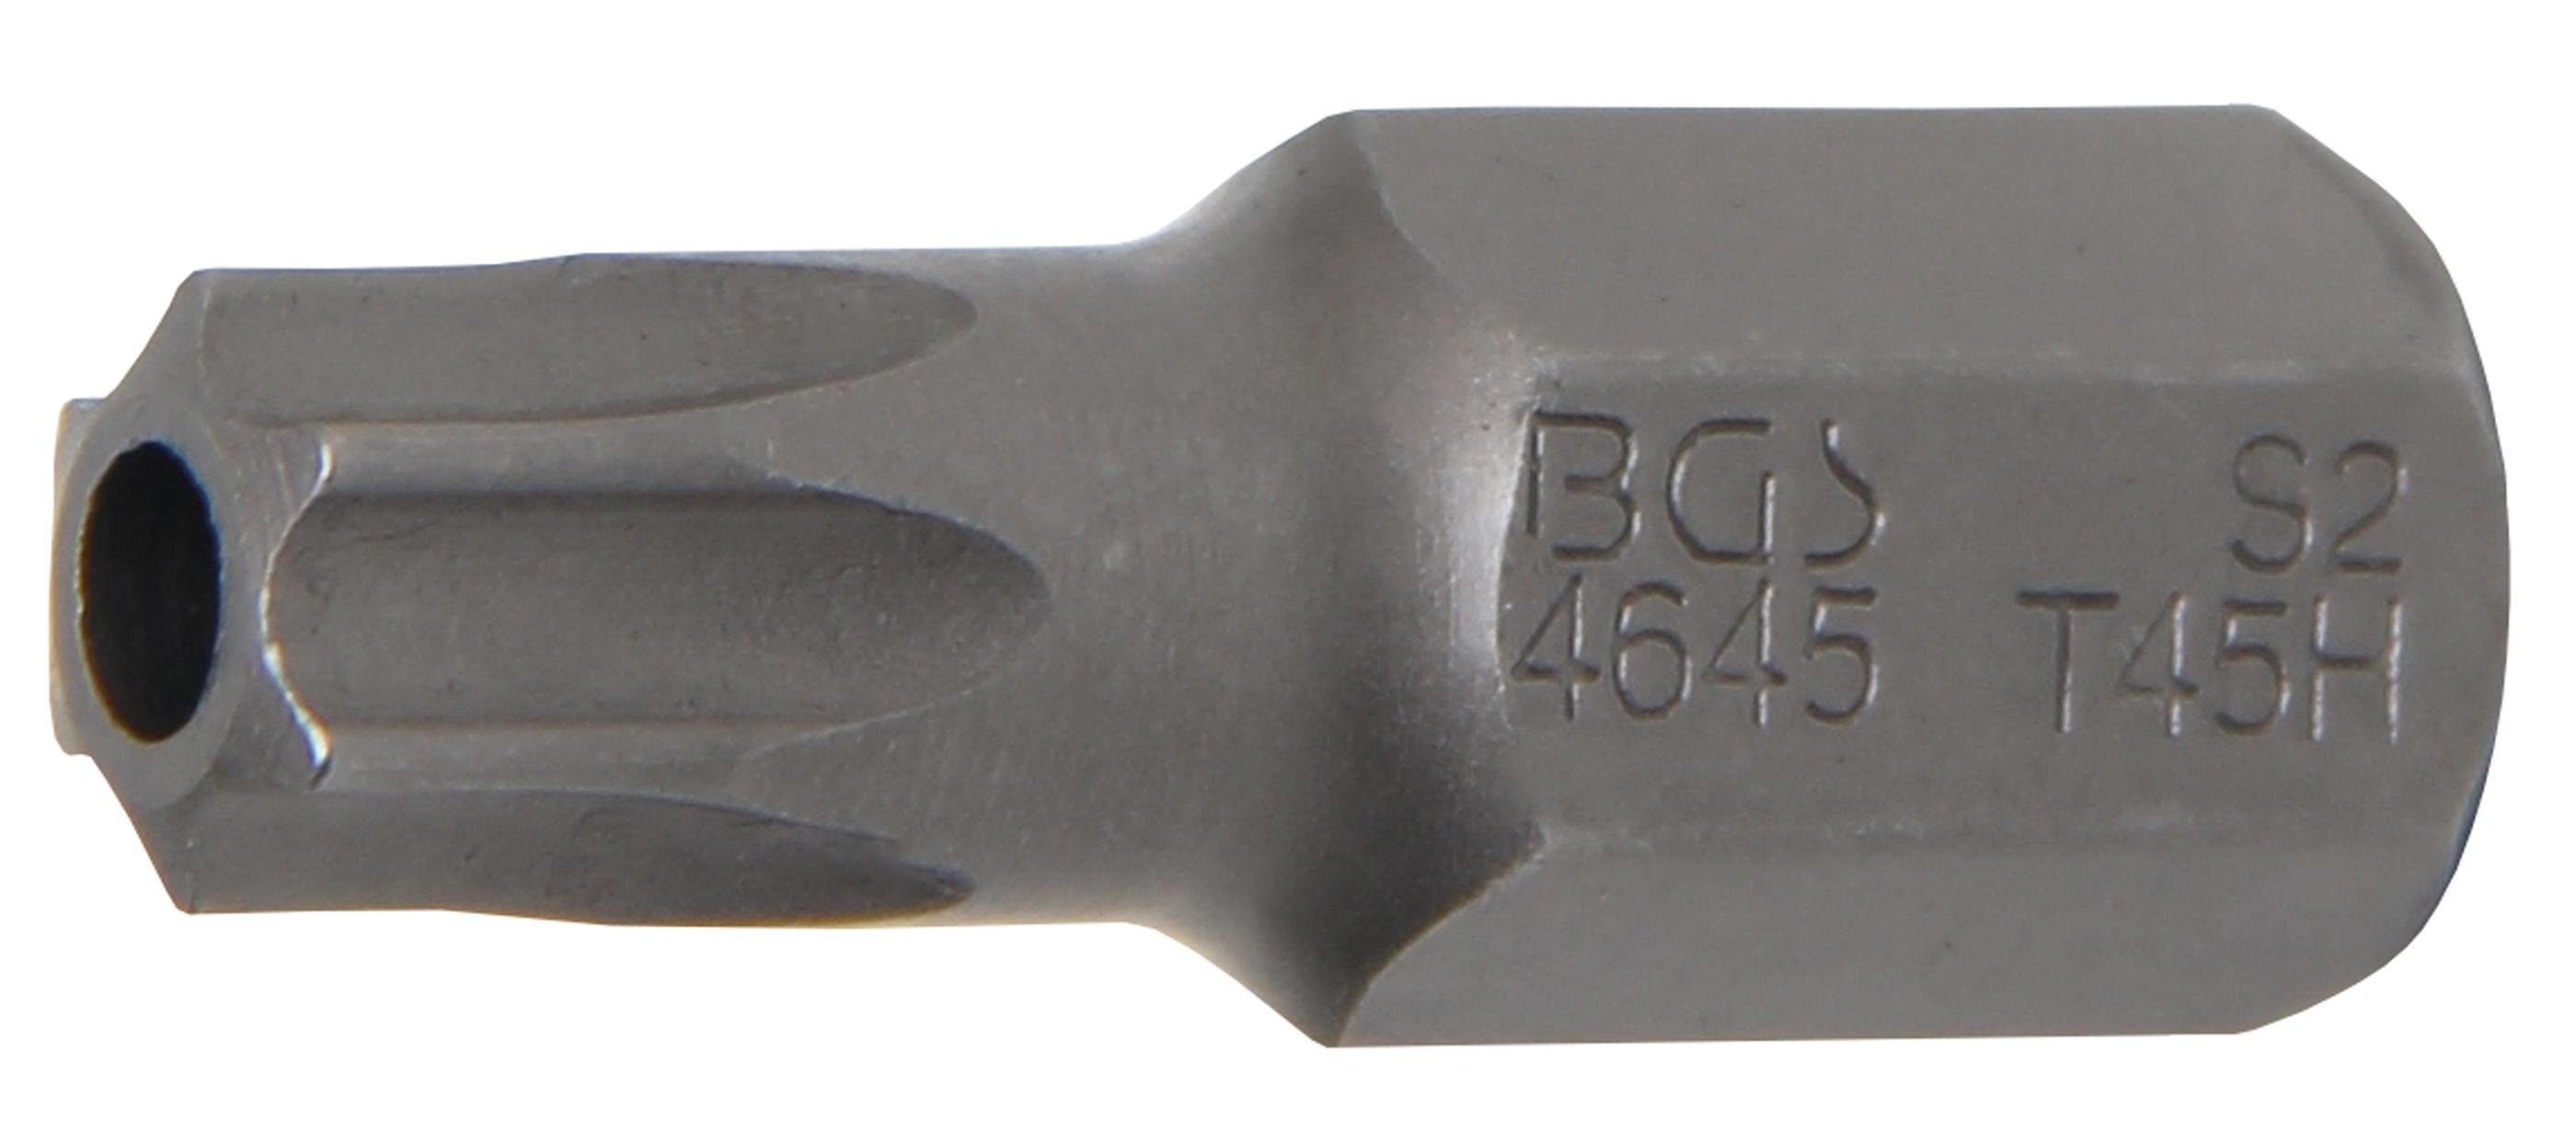 30 T-Profil mm, technic (3/8), Bit, BGS Antrieb Länge 10 Torx) (für mm T45 Bit-Schraubendreher Außensechskant Bohrung mit